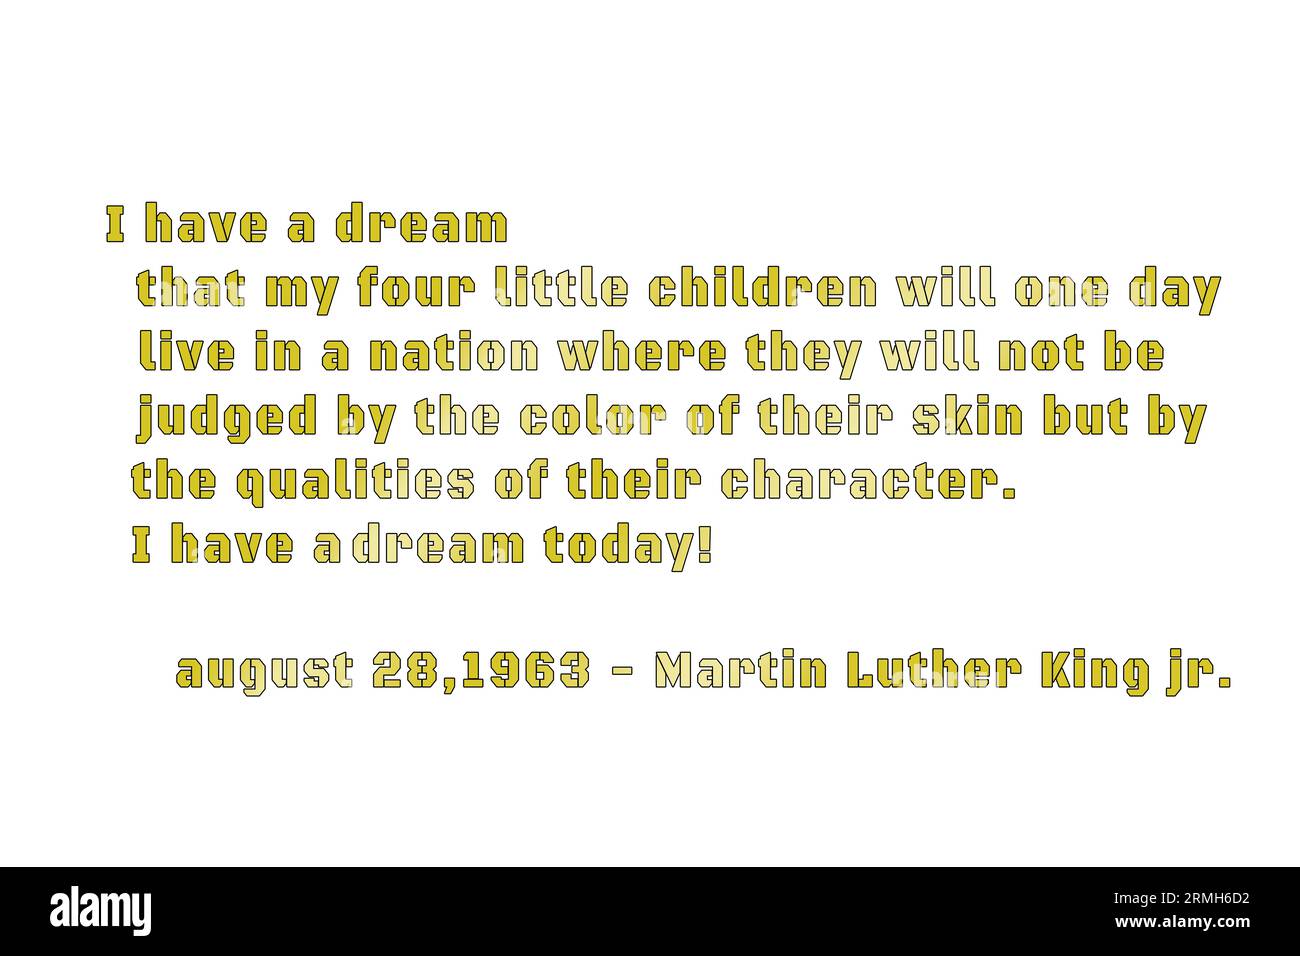 Martin Luther King avec des graphismes personnalisés, prix nobel, dans tous les modes, nous répandons le sue mots de paix et de fraternité : J'ai un rêve .. Banque D'Images